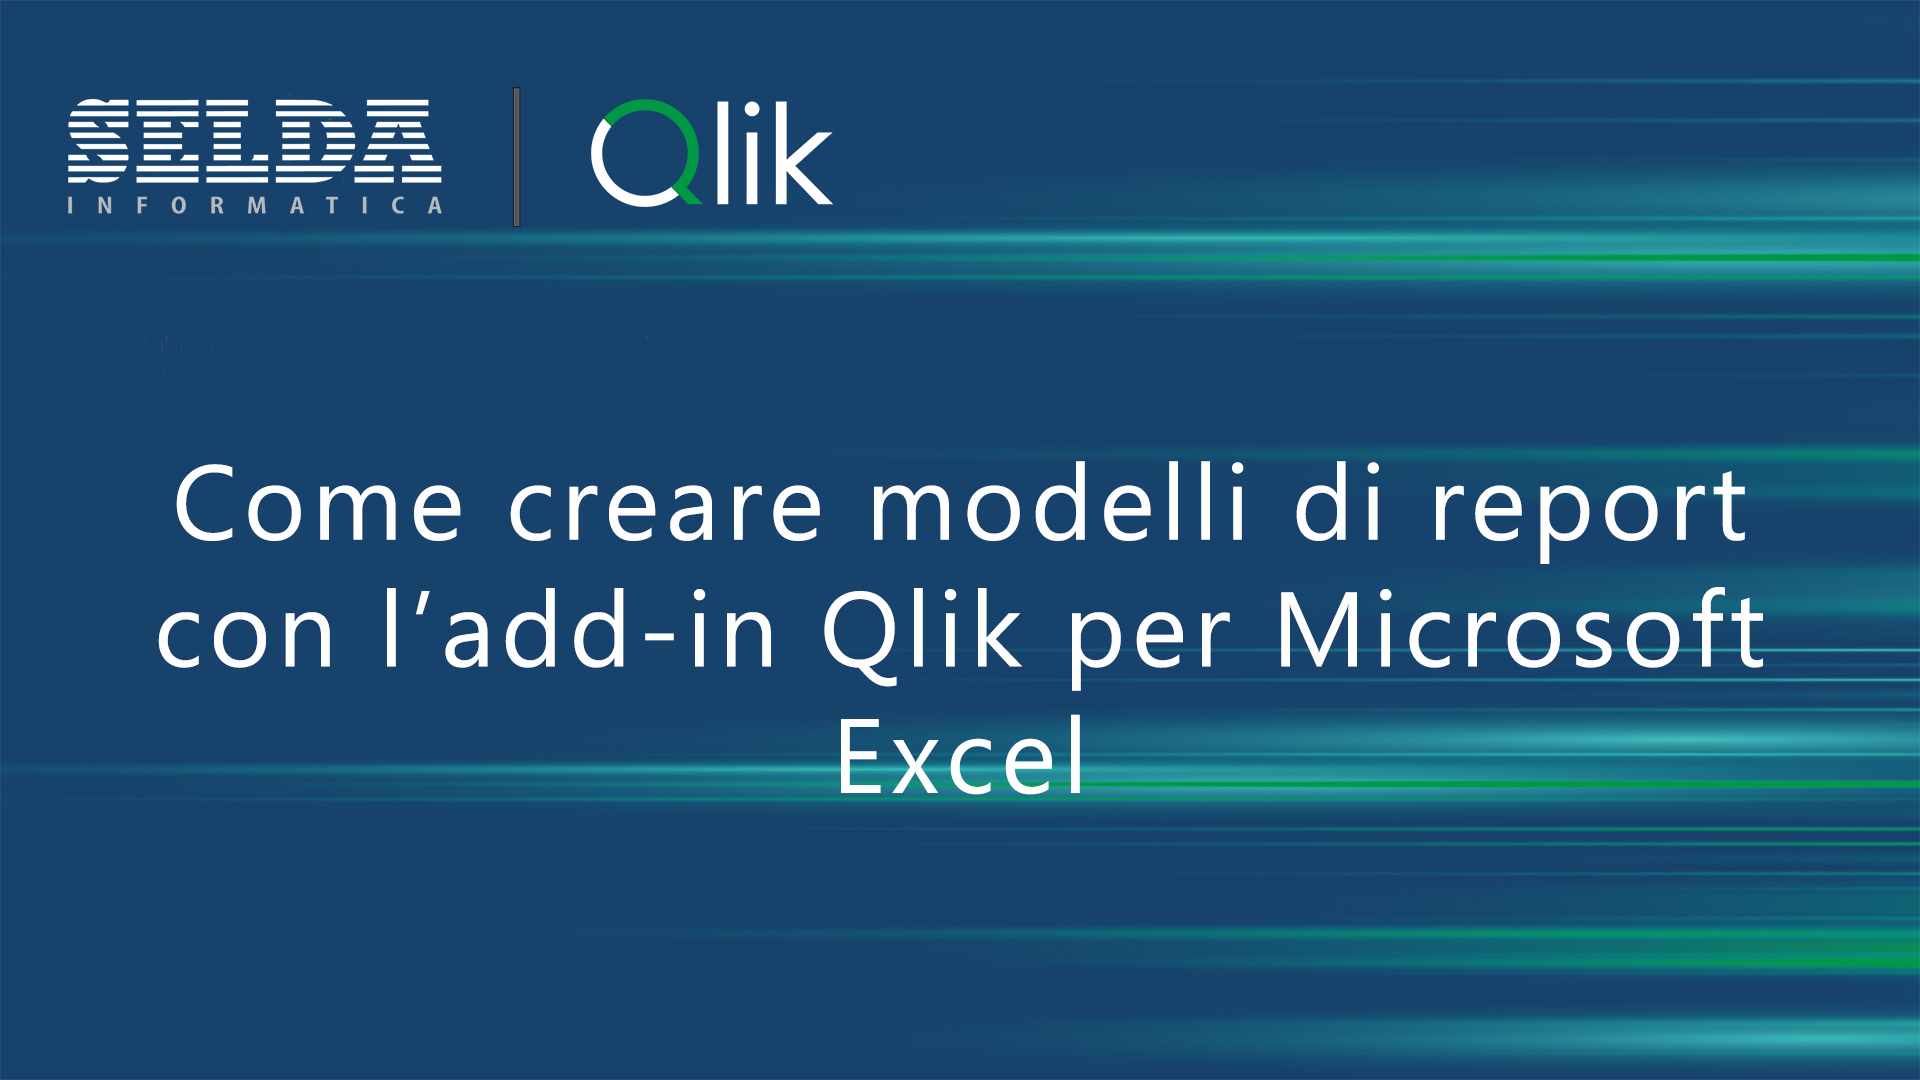 Come creare modelli di report con l'add-in qlik per Microsoft Excel